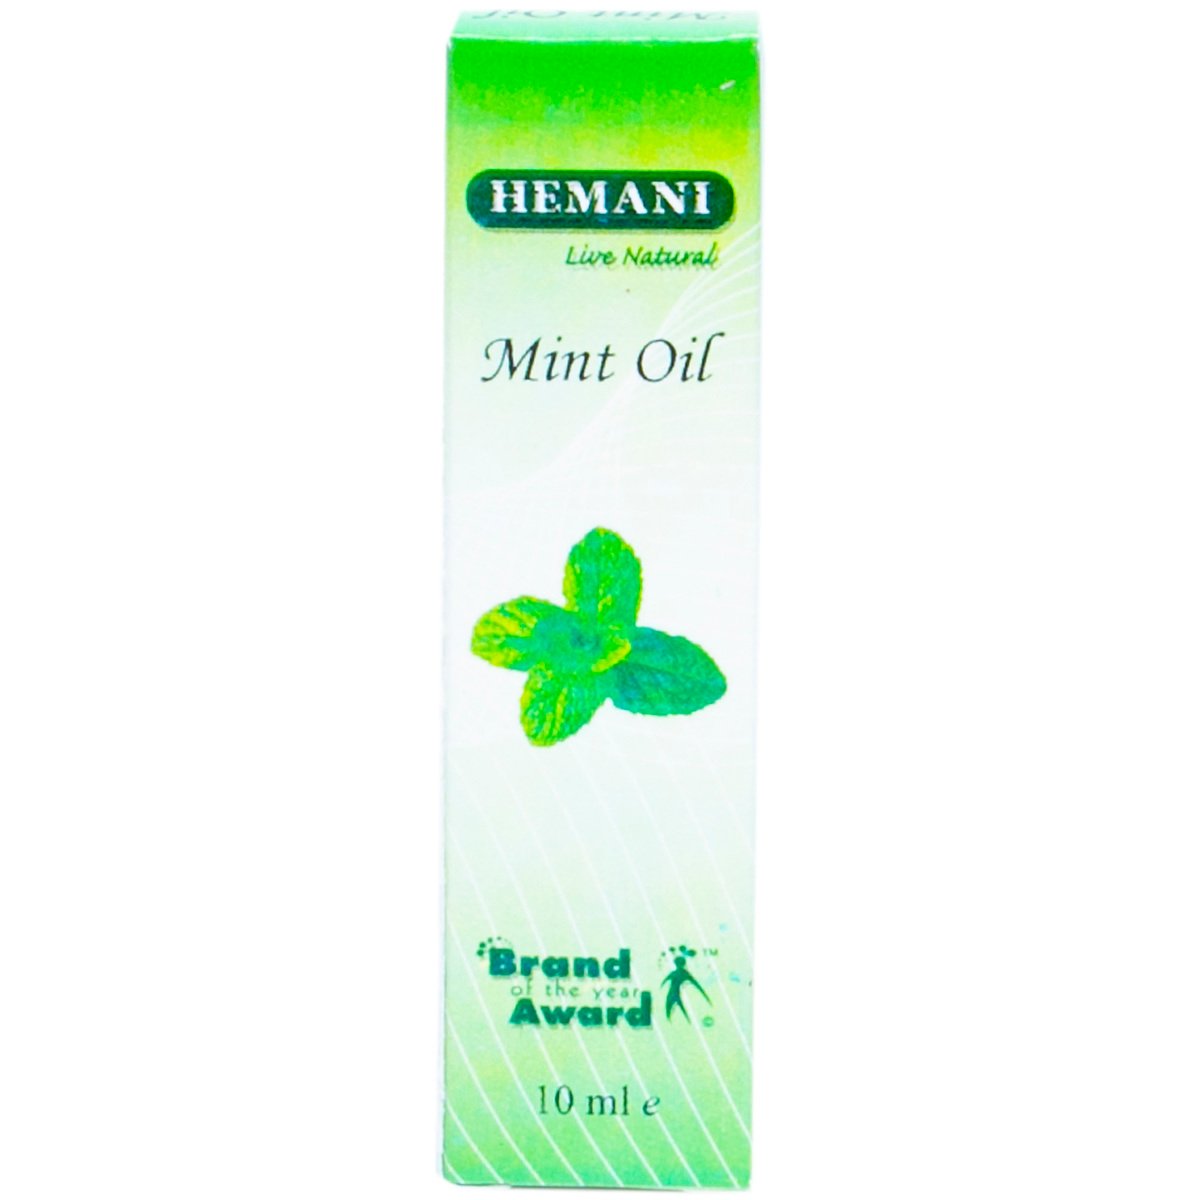 Hemani Mint Oil, 10 ml